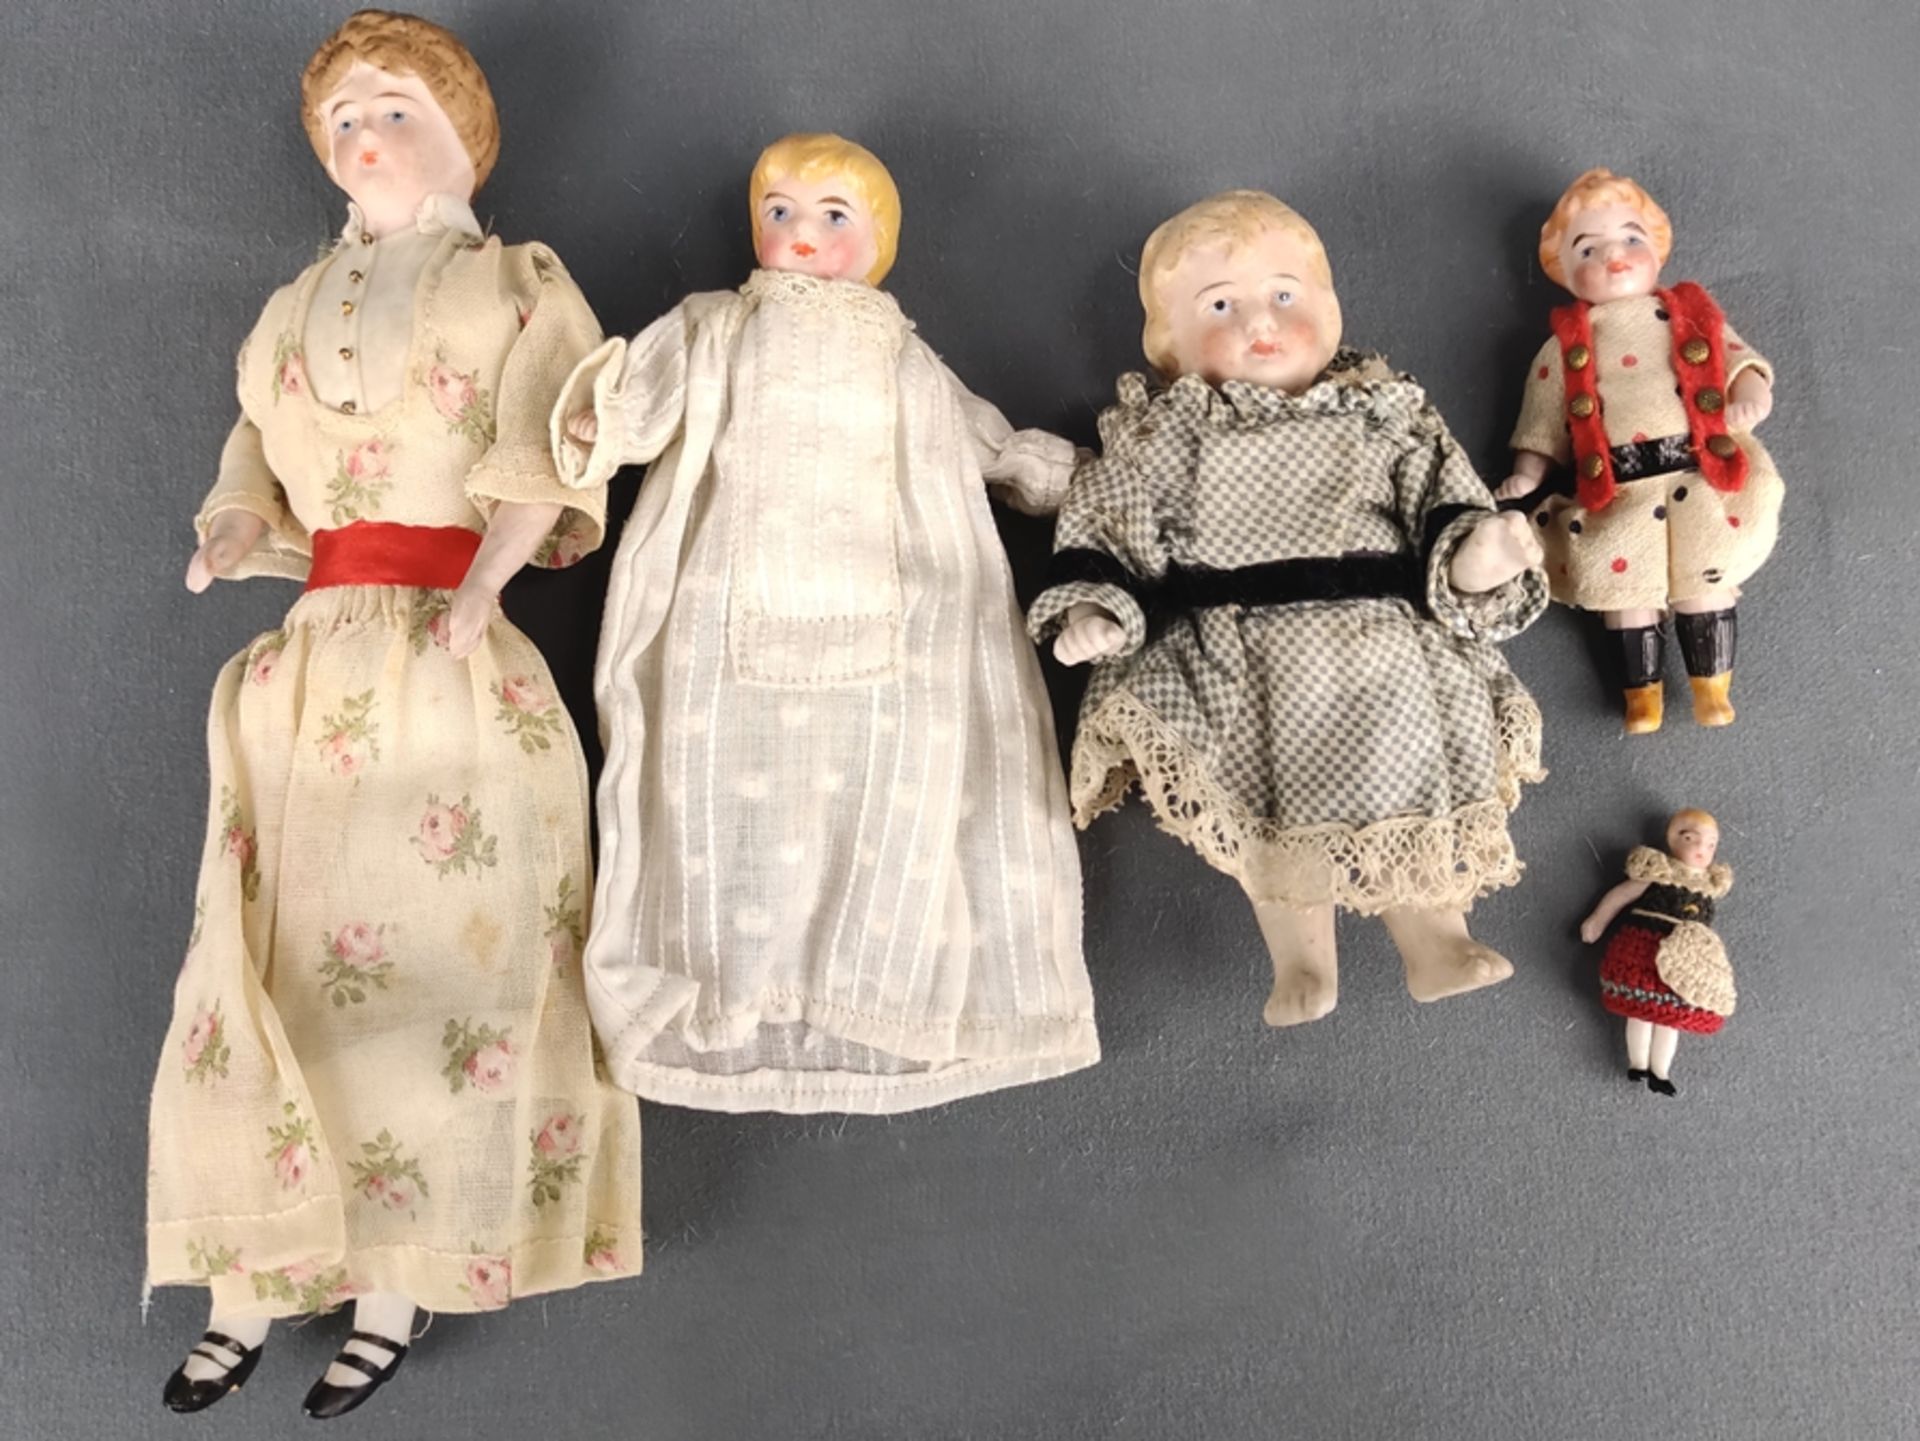 Konvolut kleine Porzellanpuppen, 5 Stück, bestehend aus: Dame in geblümten Kleid, Kopf, Arme sowie 